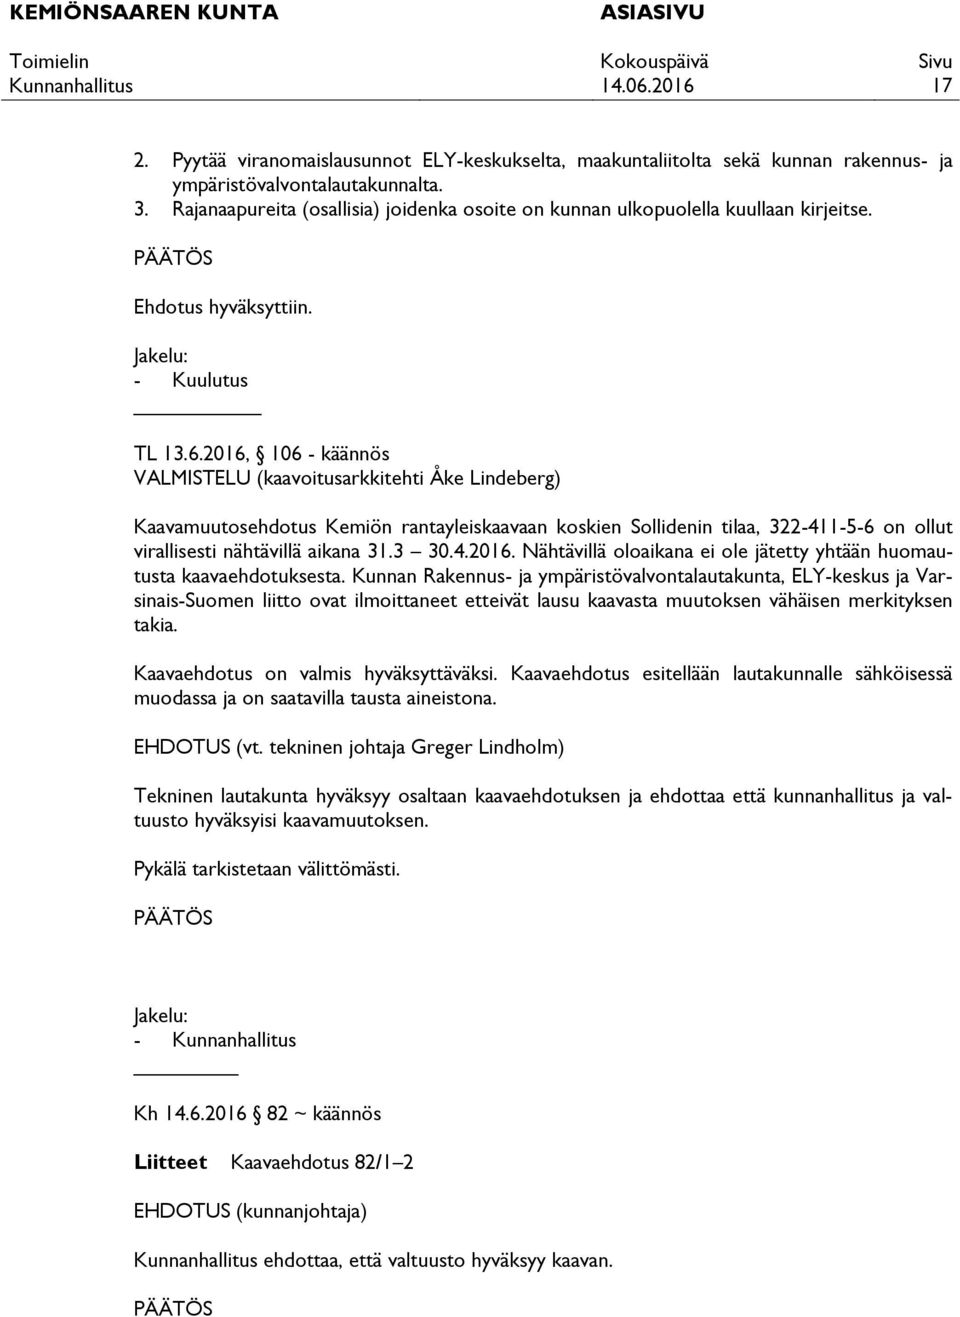 2016, 106 - käännös VALMISTELU (kaavoitusarkkitehti Åke Lindeberg) Kaavamuutosehdotus Kemiön rantayleiskaavaan koskien Sollidenin tilaa, 322-411-5-6 on ollut virallisesti nähtävillä aikana 31.3 30.4.2016. Nähtävillä oloaikana ei ole jätetty yhtään huomautusta kaavaehdotuksesta.